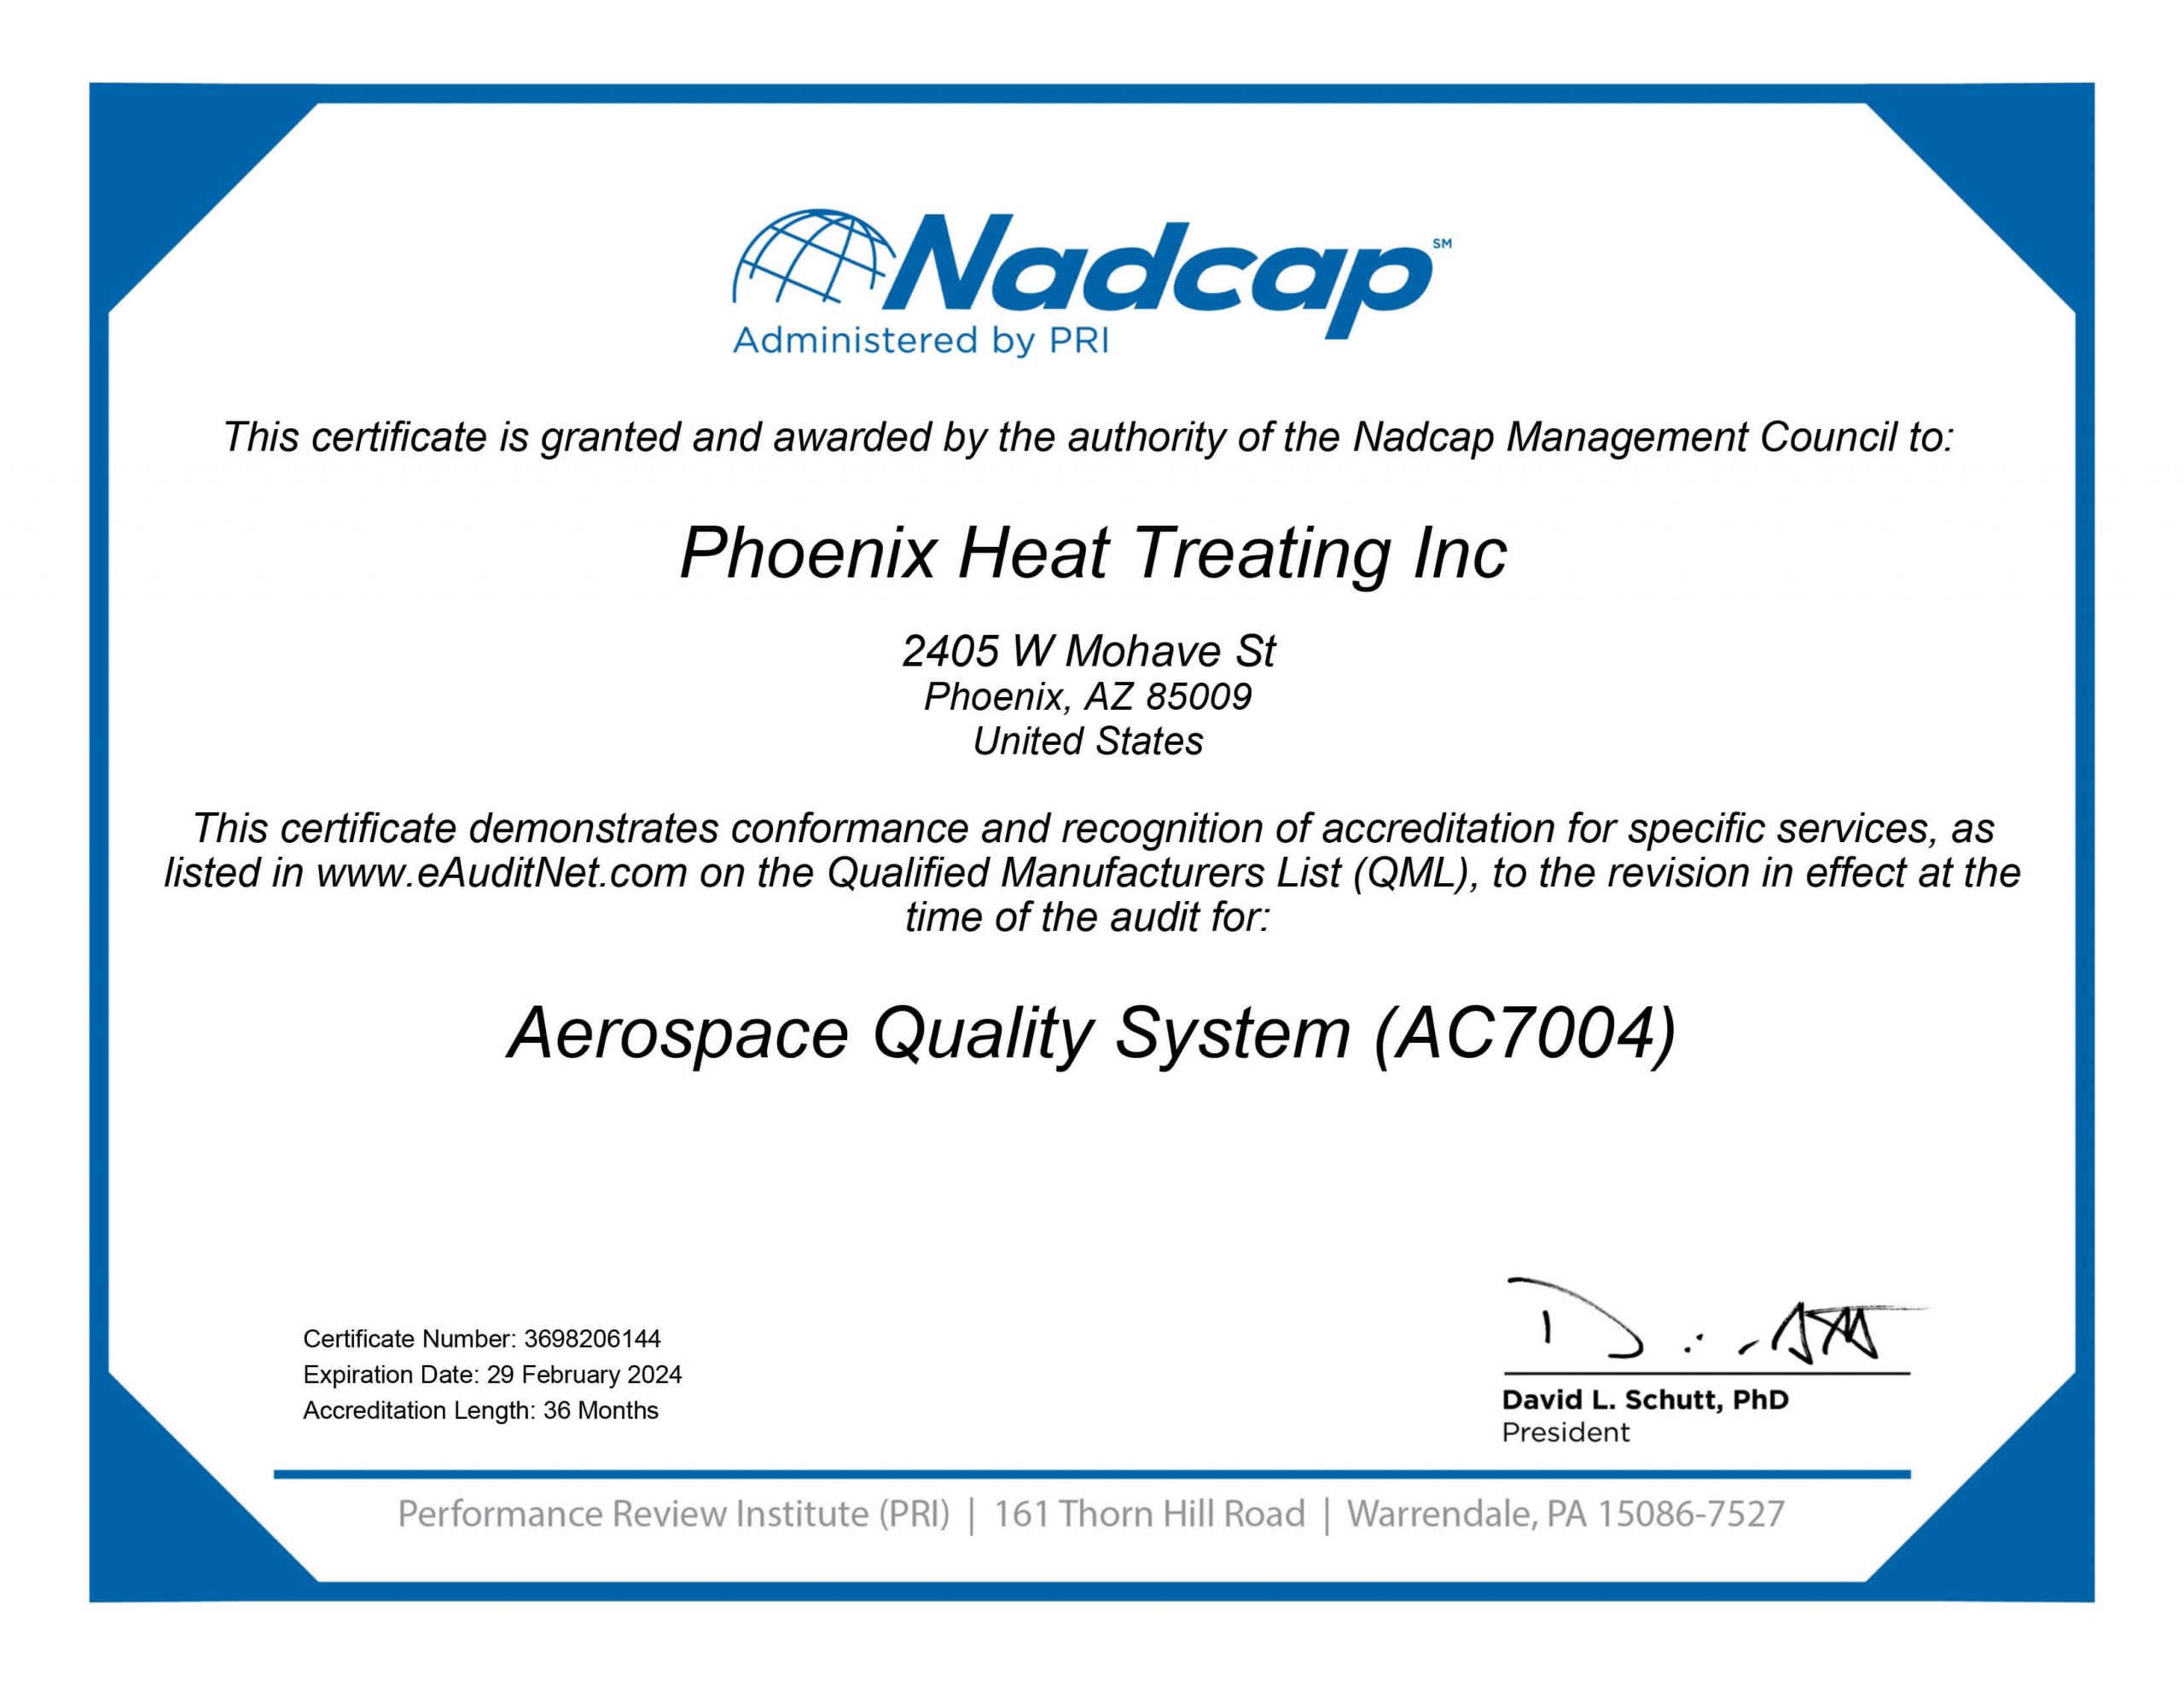 Nadcap certificate